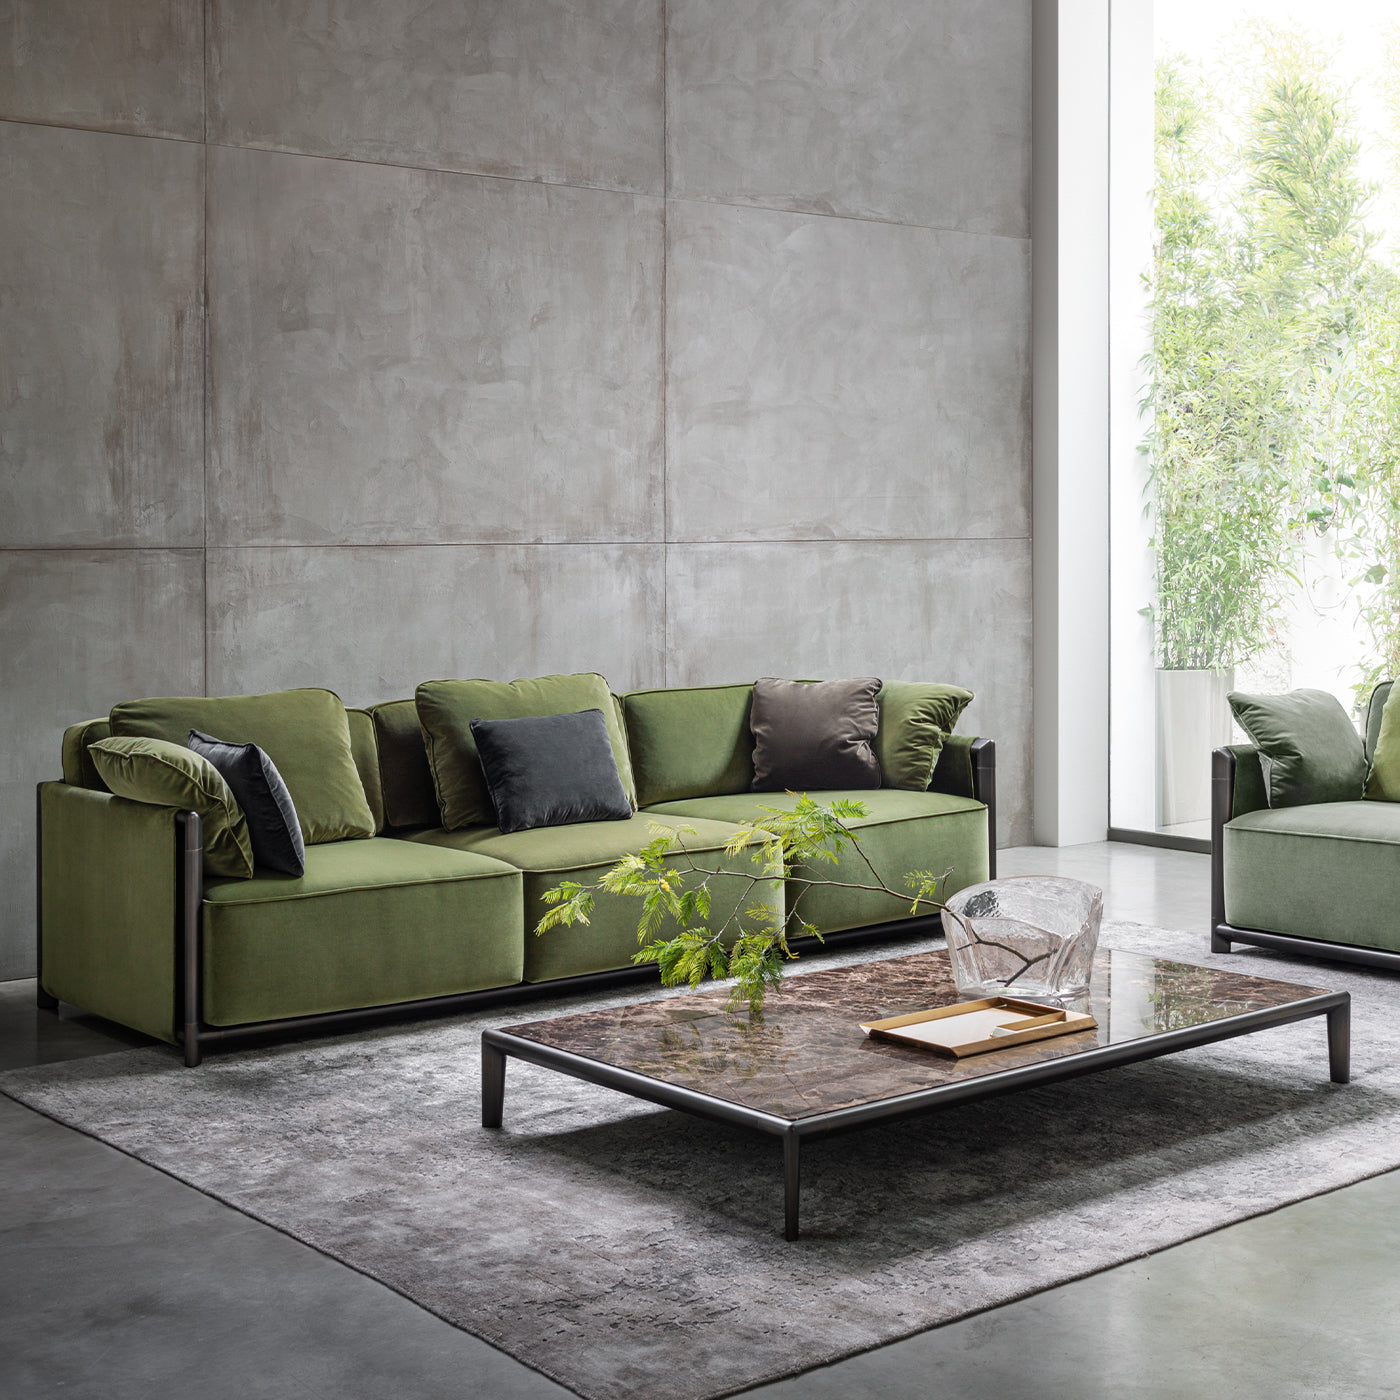 Dodo Green Sofa by Stefano Giovannoni - Alternative view 5